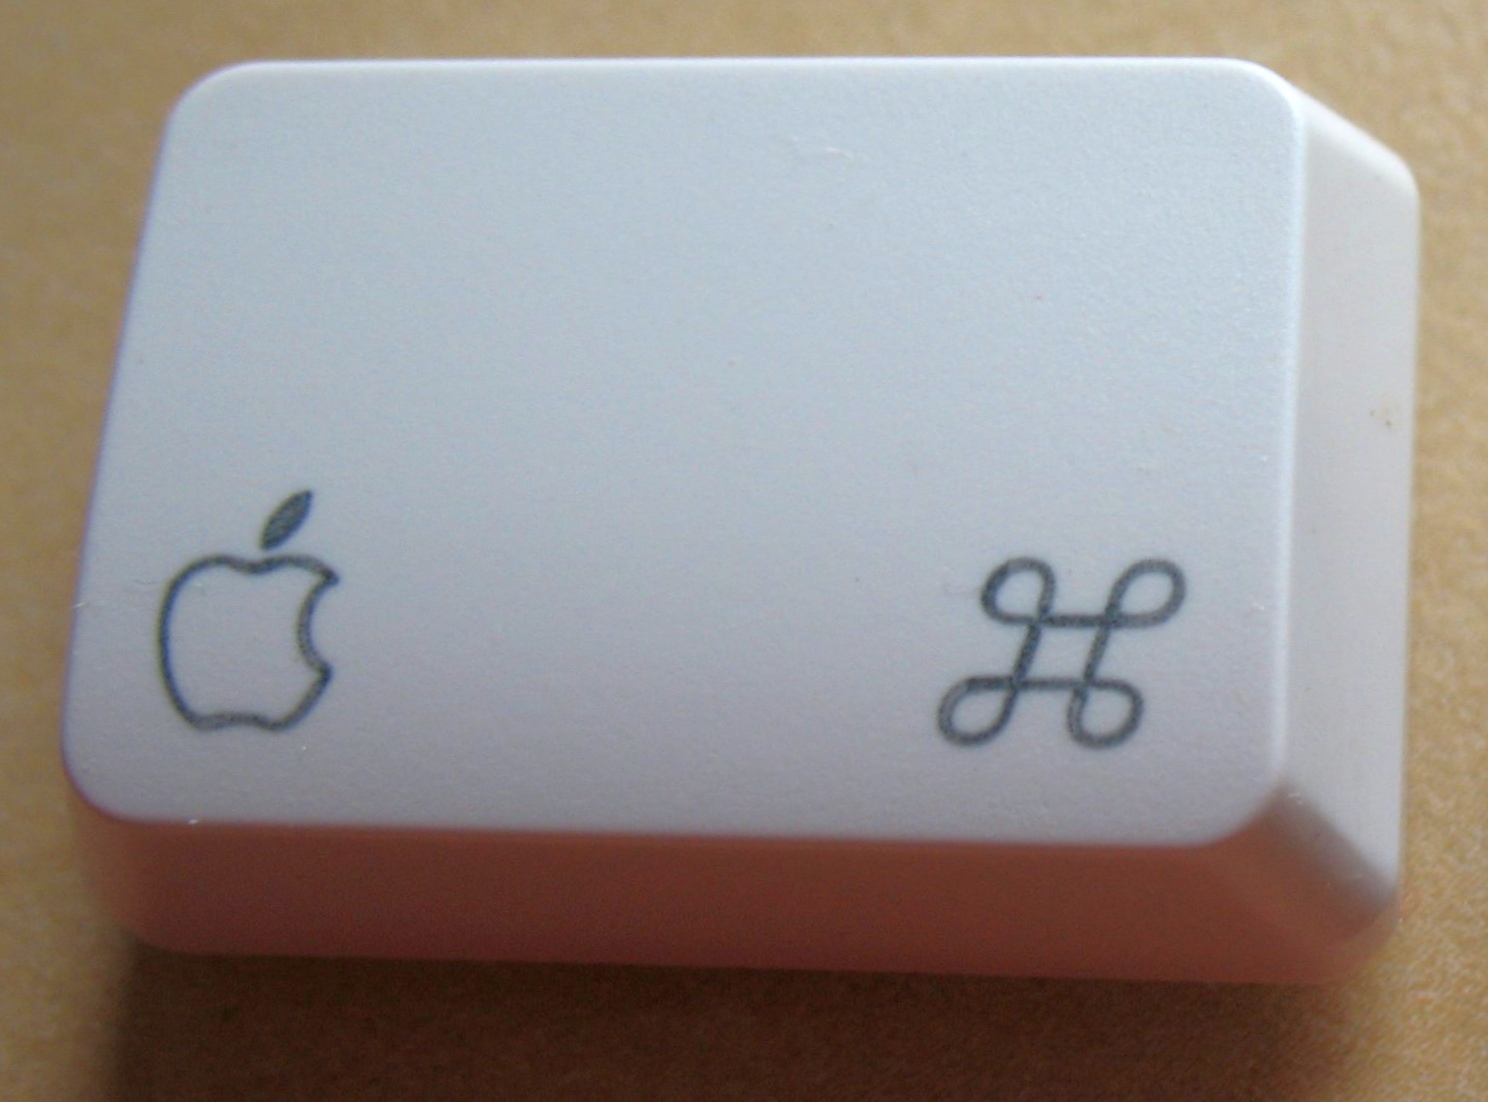 Давайте посмотрим на два самых знаковых символа, которые есть на каждом Mac :)